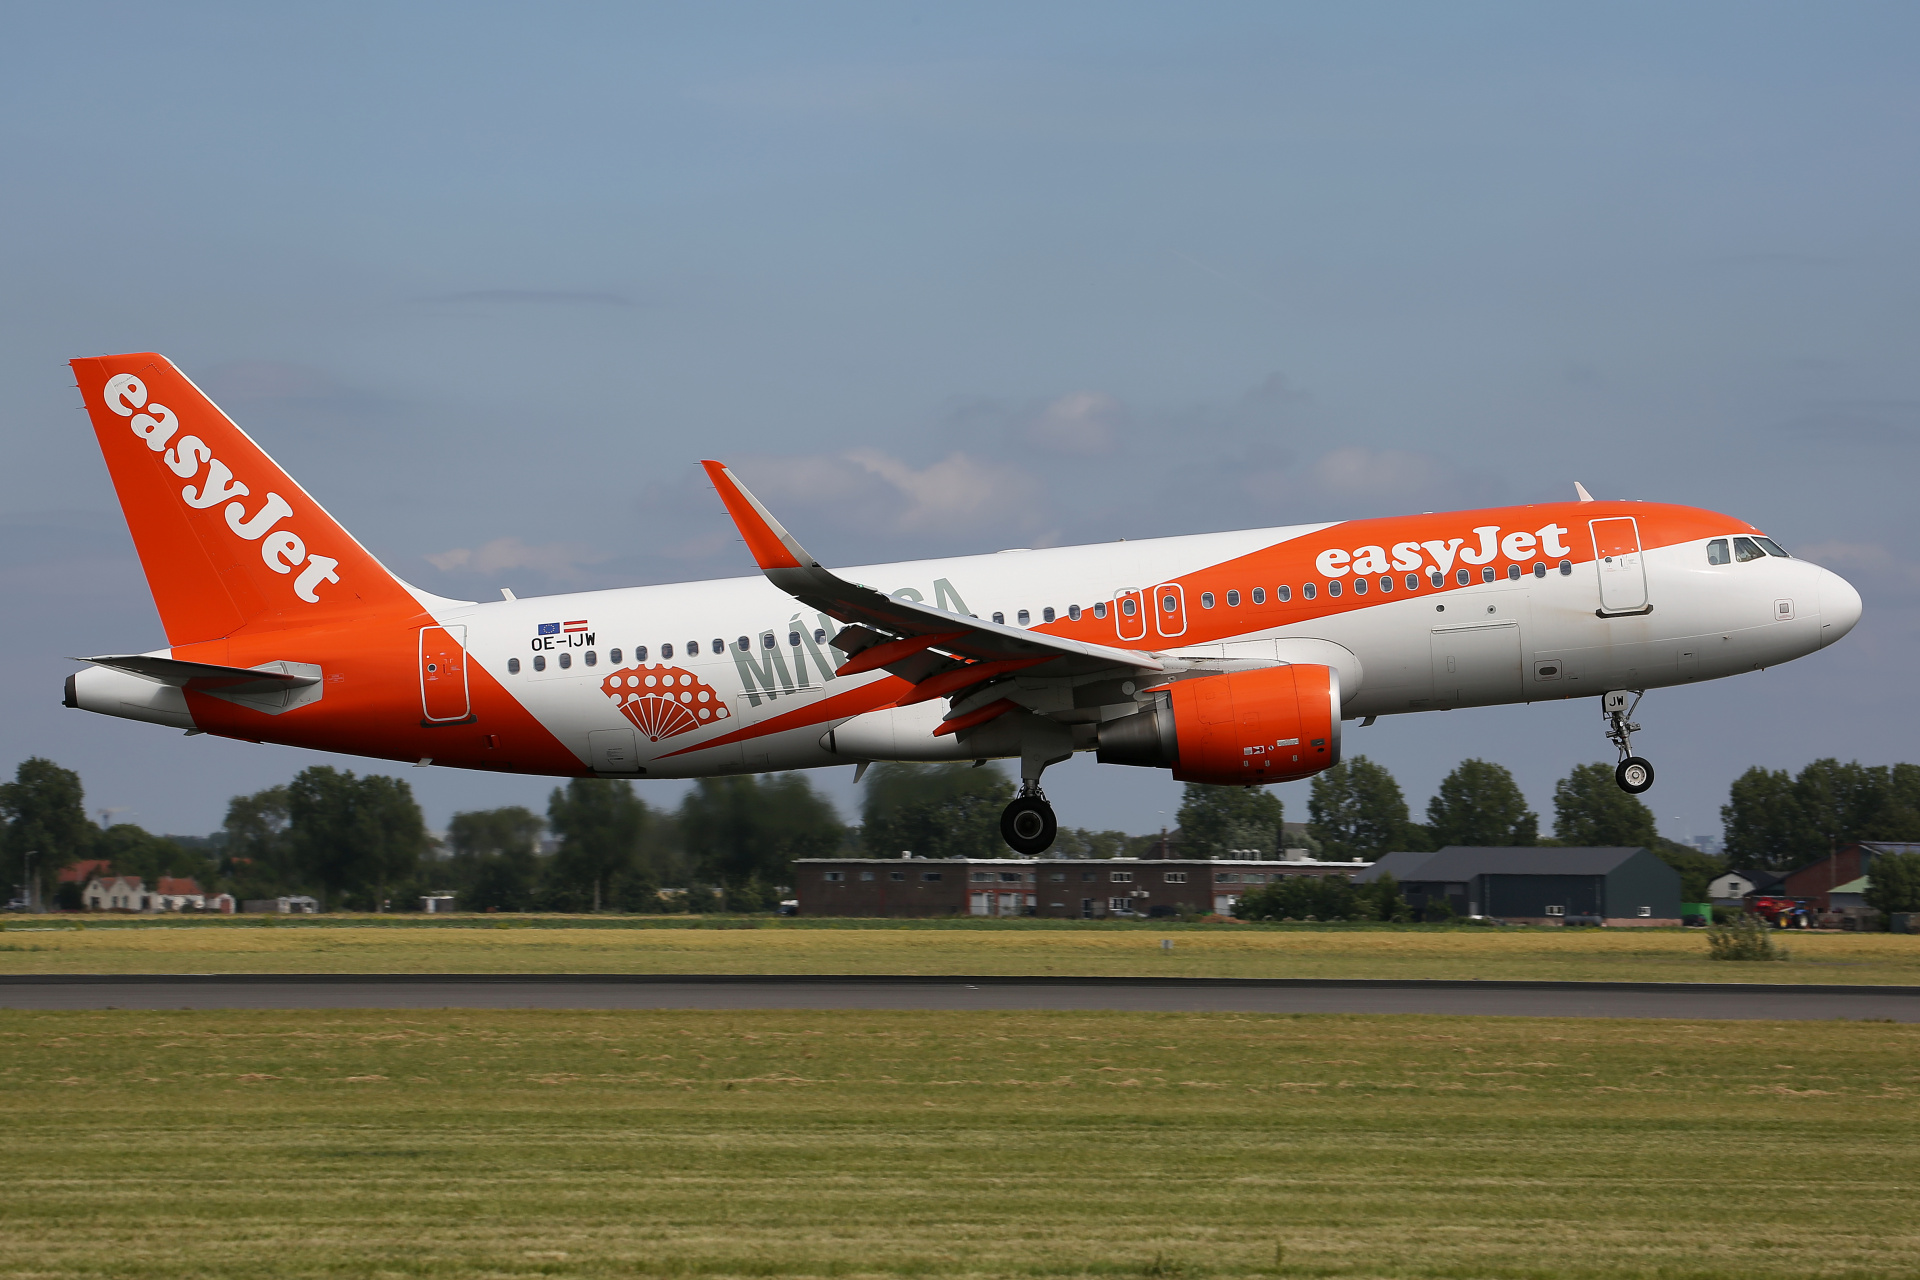 OE-IJW (malowanie Malaga) (Samoloty » Spotting na Schiphol » Airbus A320-200 » EasyJet)